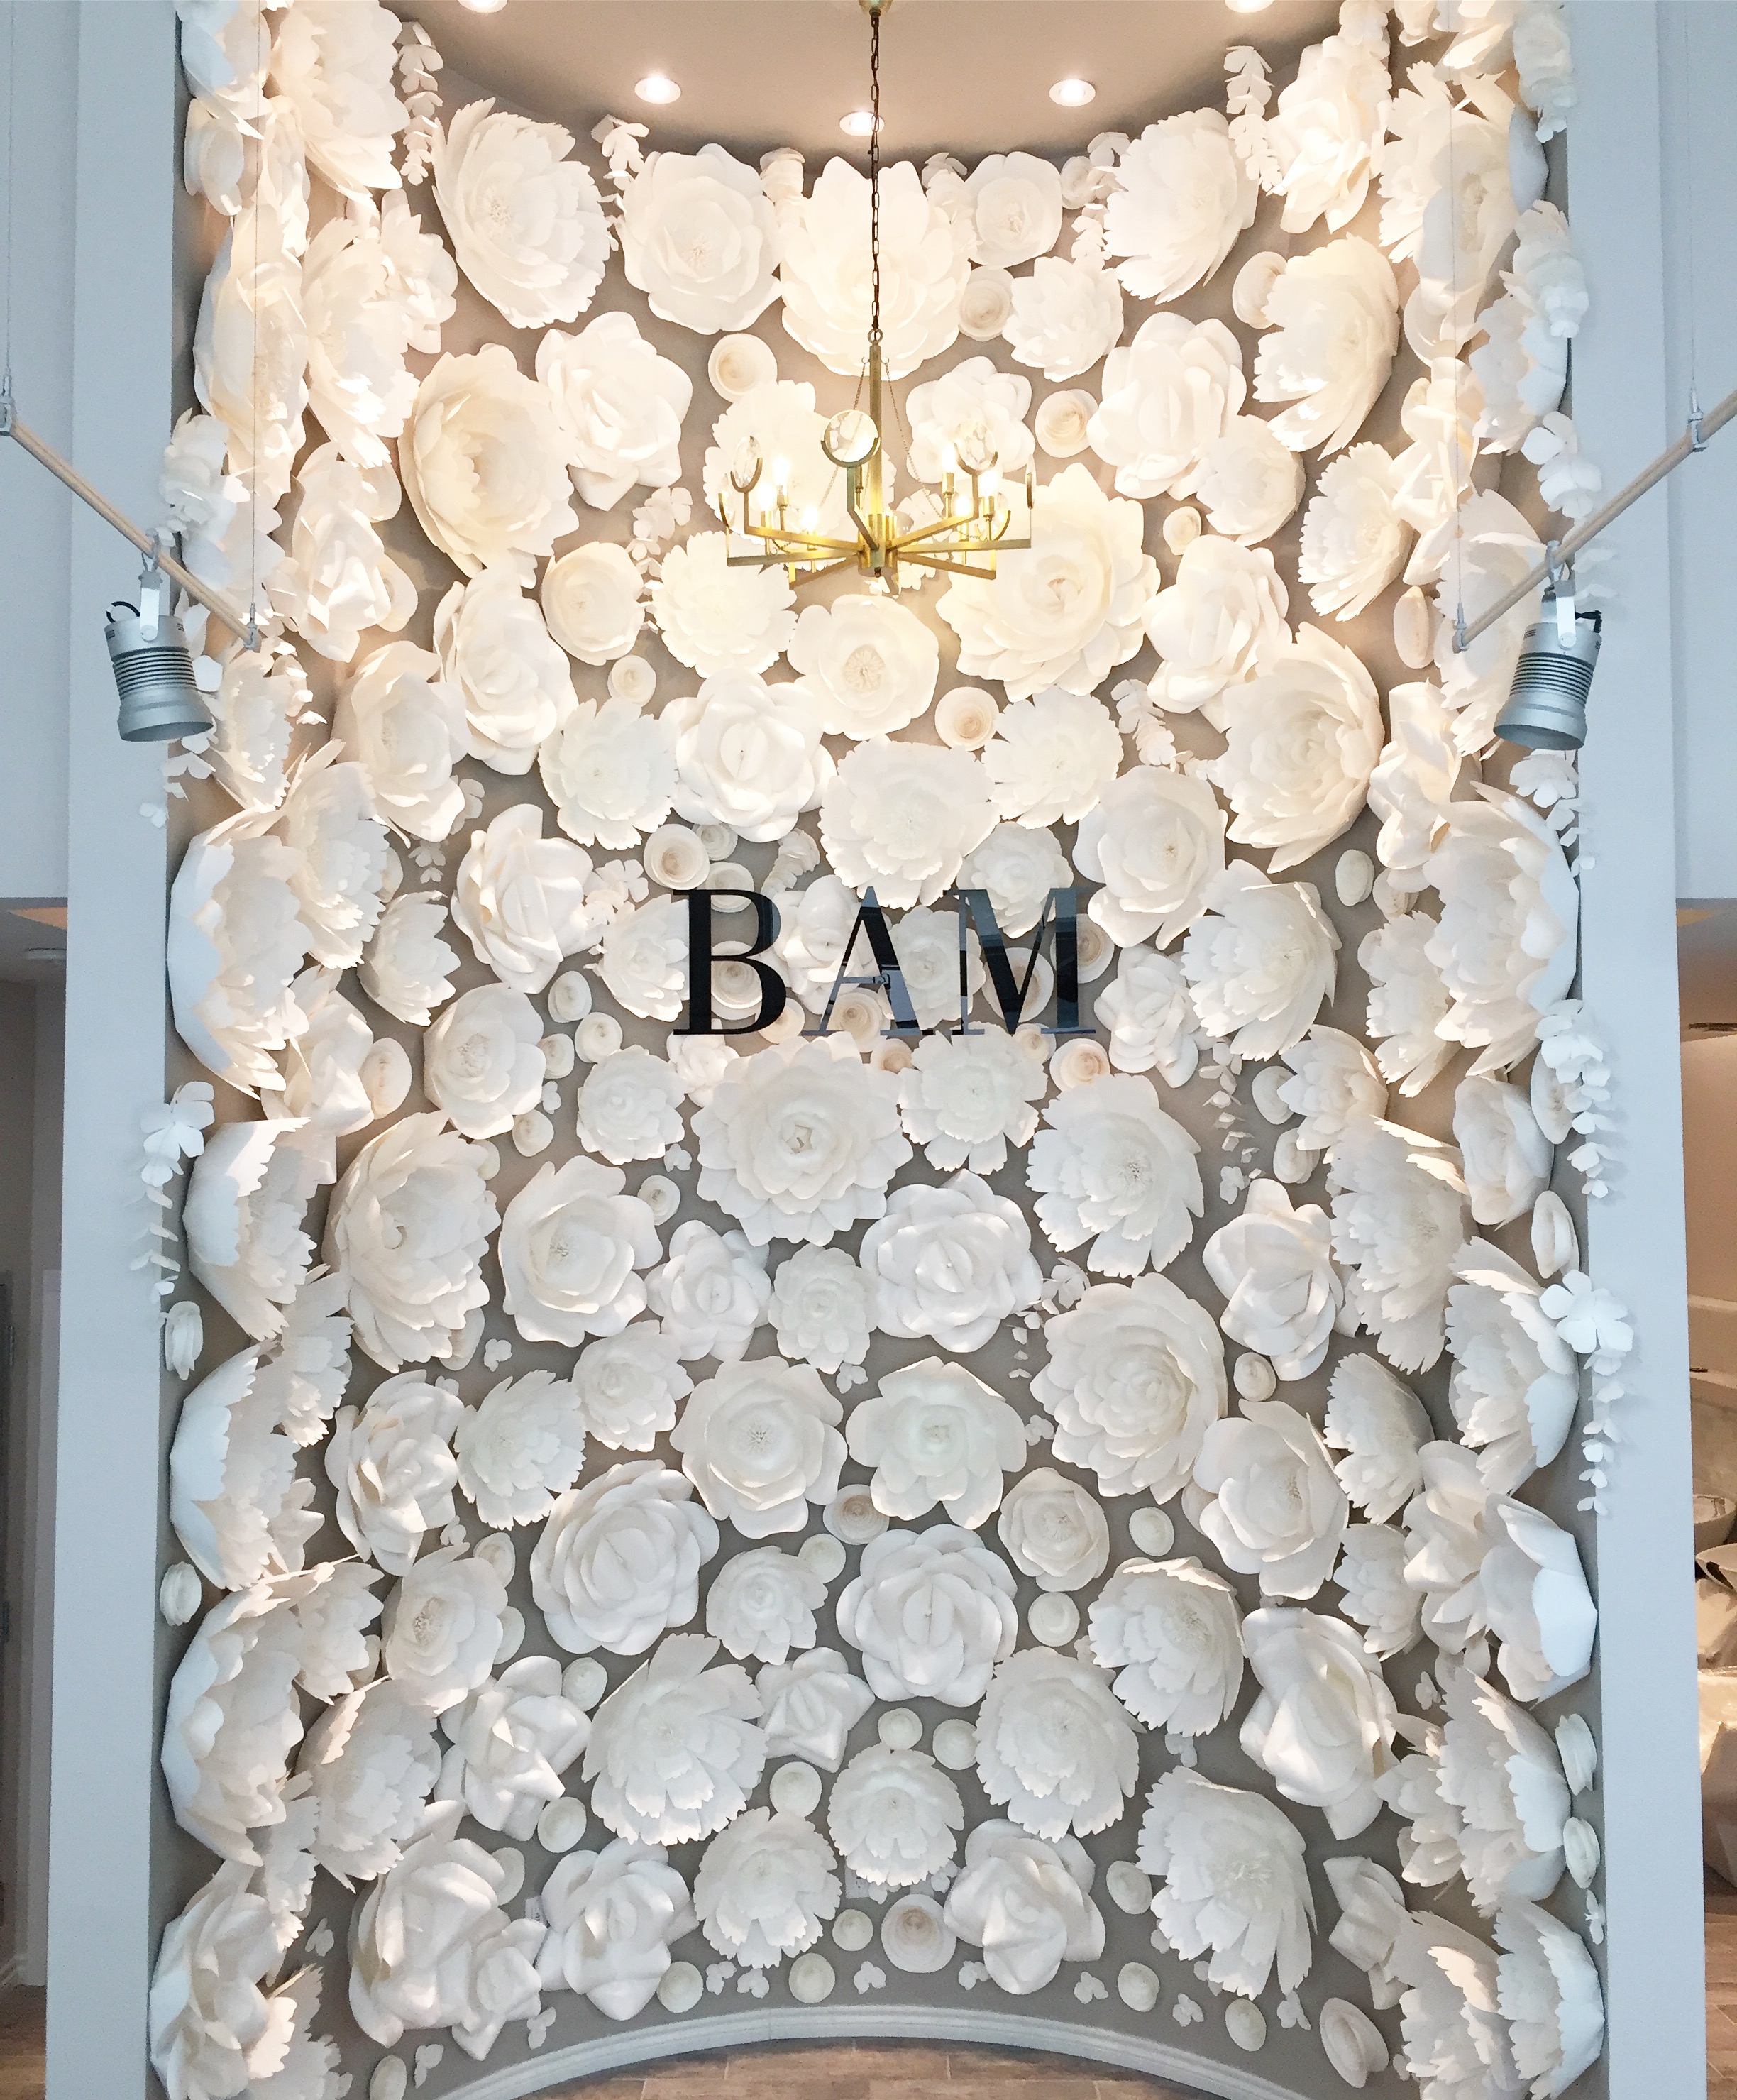  BAM Paper Flower Wall       